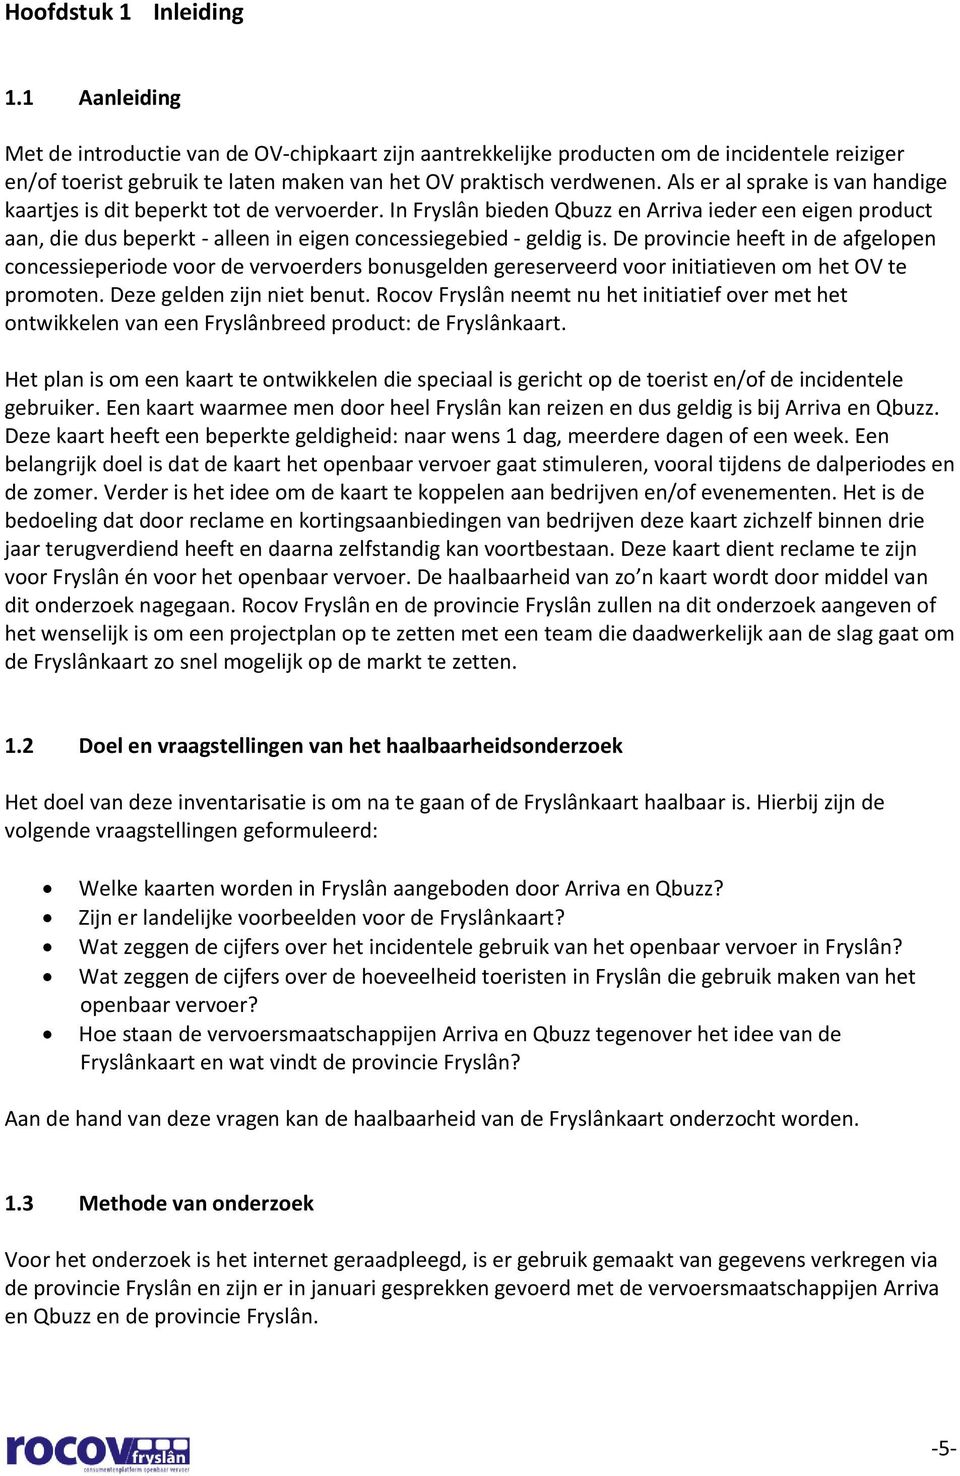 Als er al sprake is van handige kaartjes is dit beperkt tot de vervoerder. In Fryslân bieden Qbuzz en Arriva ieder een eigen product aan, die dus beperkt - alleen in eigen concessiegebied - geldig is.